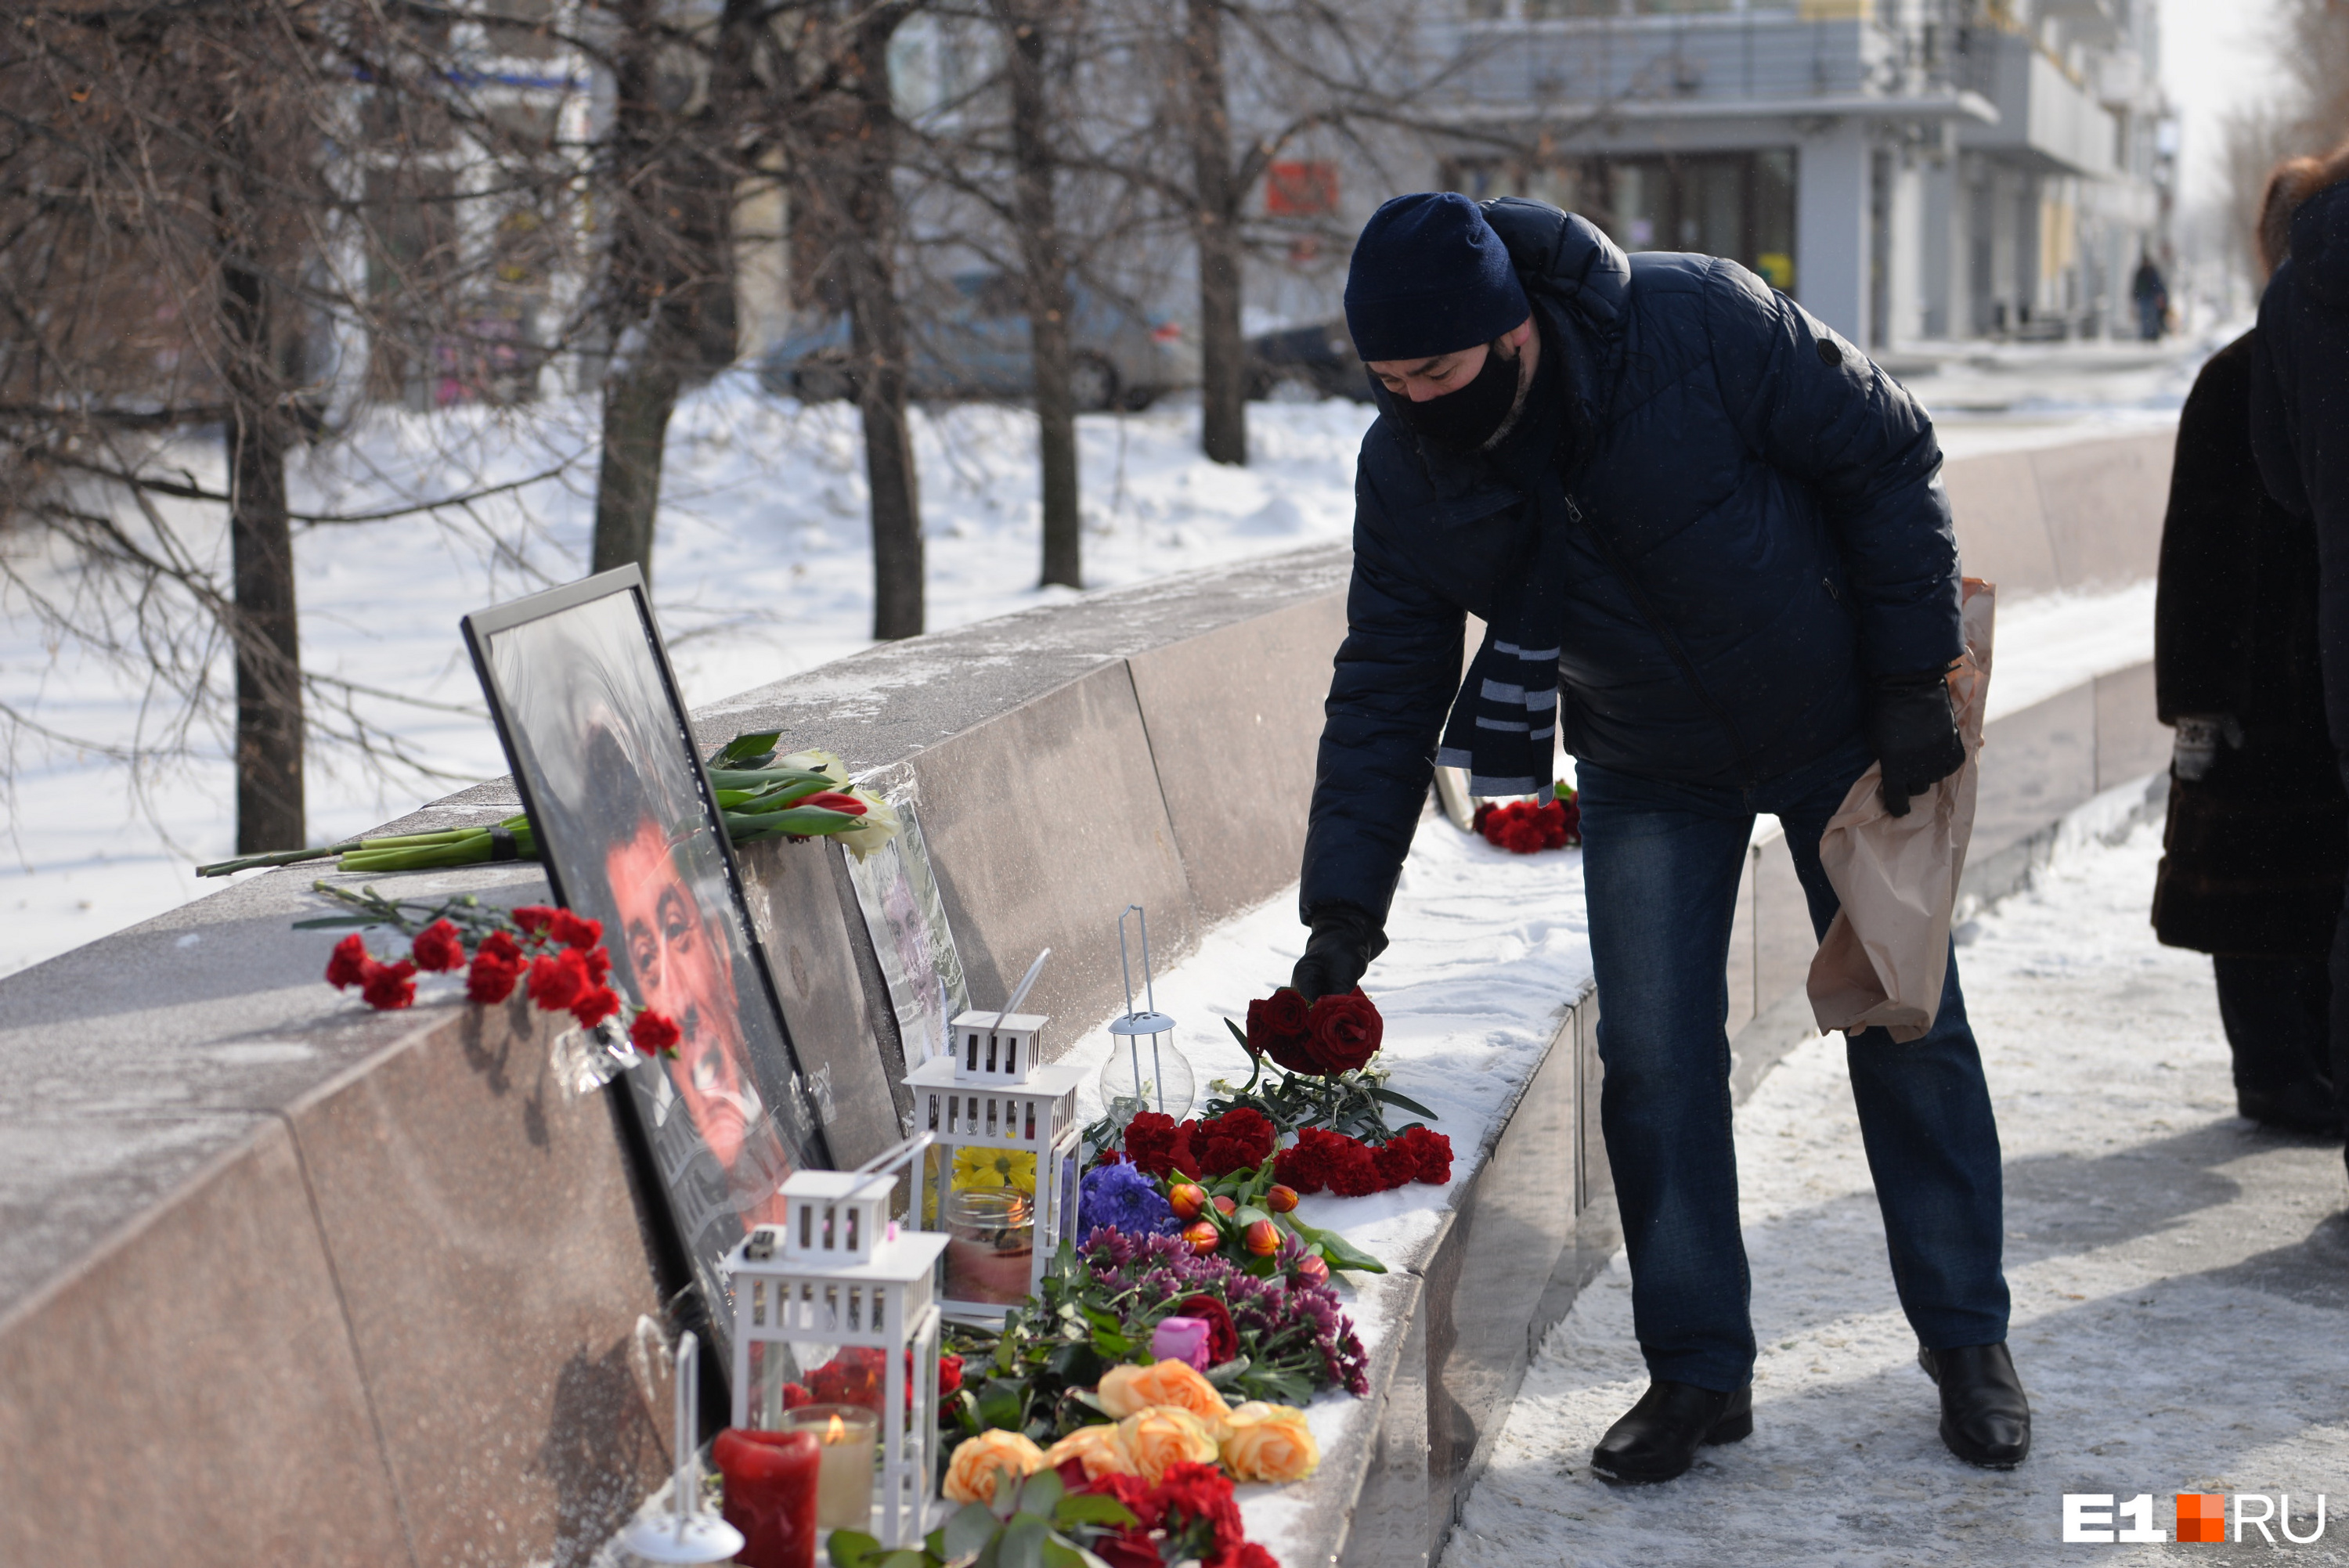 Миха Немцов Чехов. Похоровы Немцов. Митинг убили